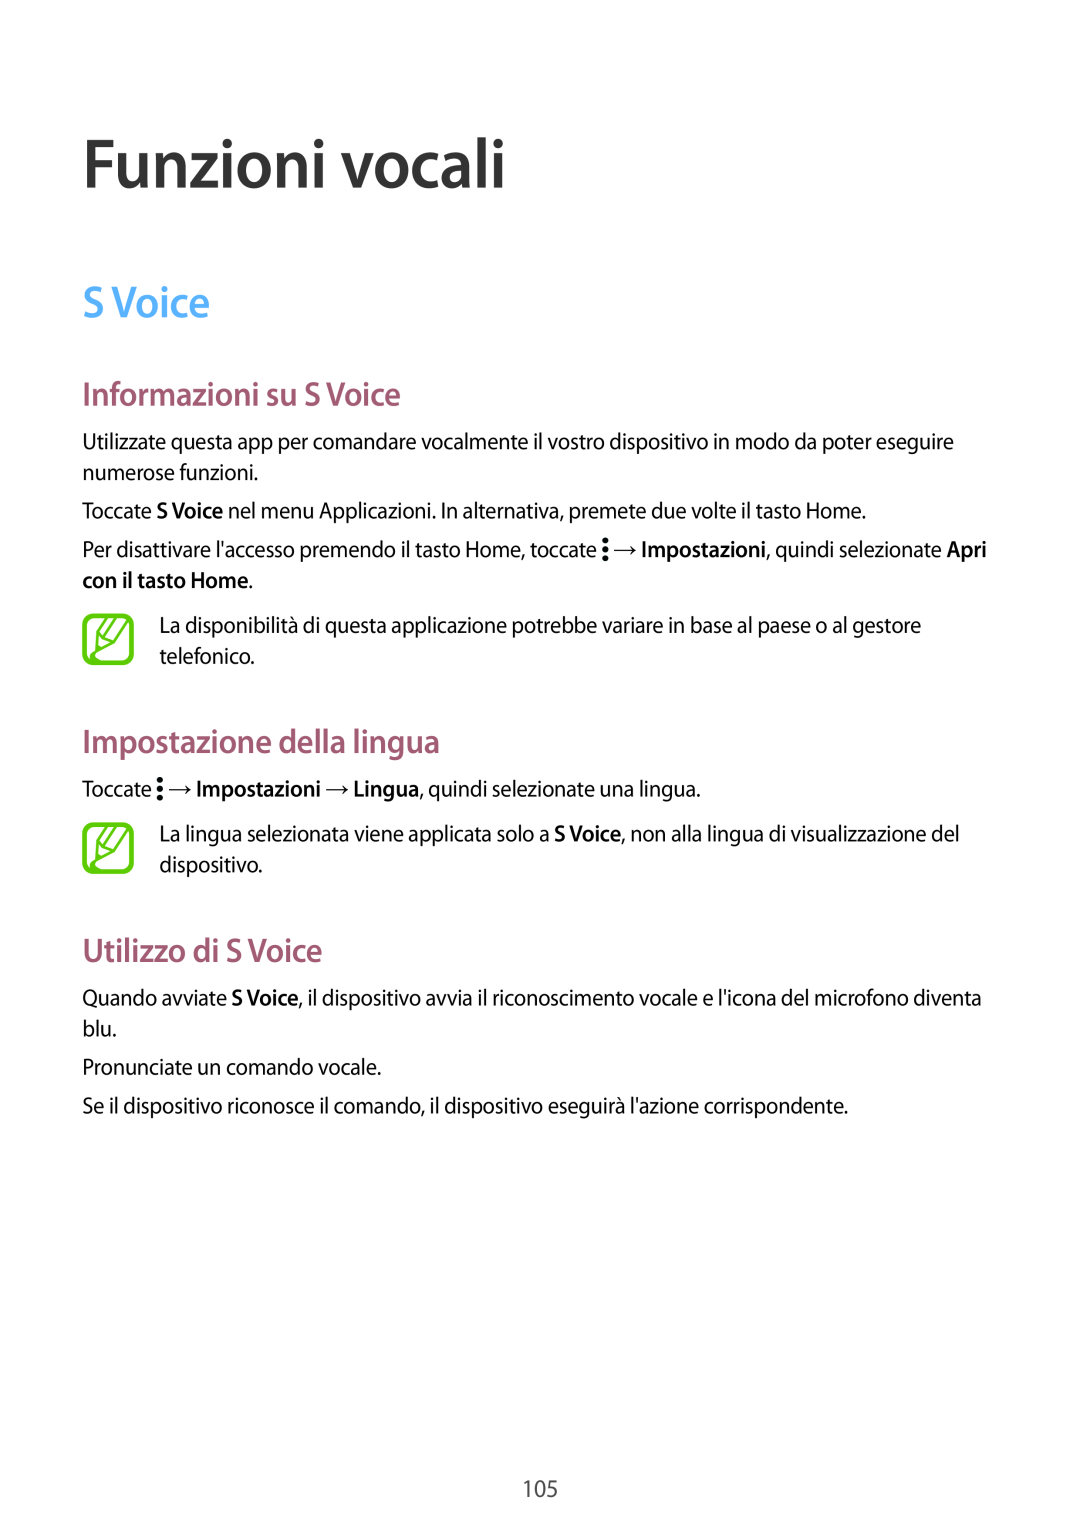 Samsung SM-G900FZDAOMN manual Funzioni vocali, Informazioni su S Voice, Impostazione della lingua, Utilizzo di S Voice 